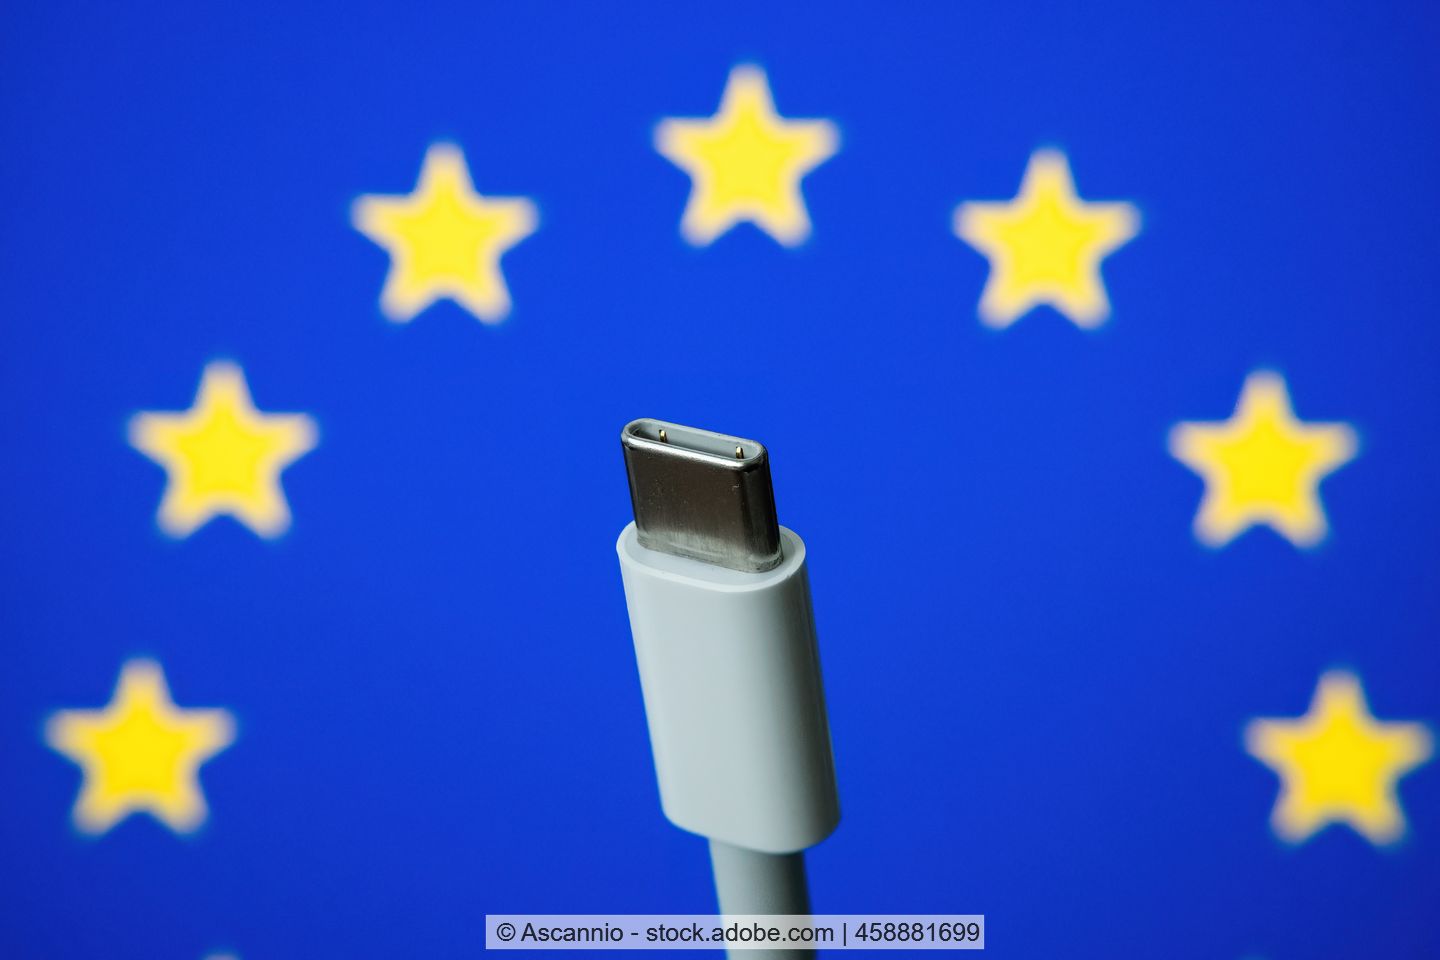 Ein USB-C Ladekabel liegt auf einer EU-Flagge.